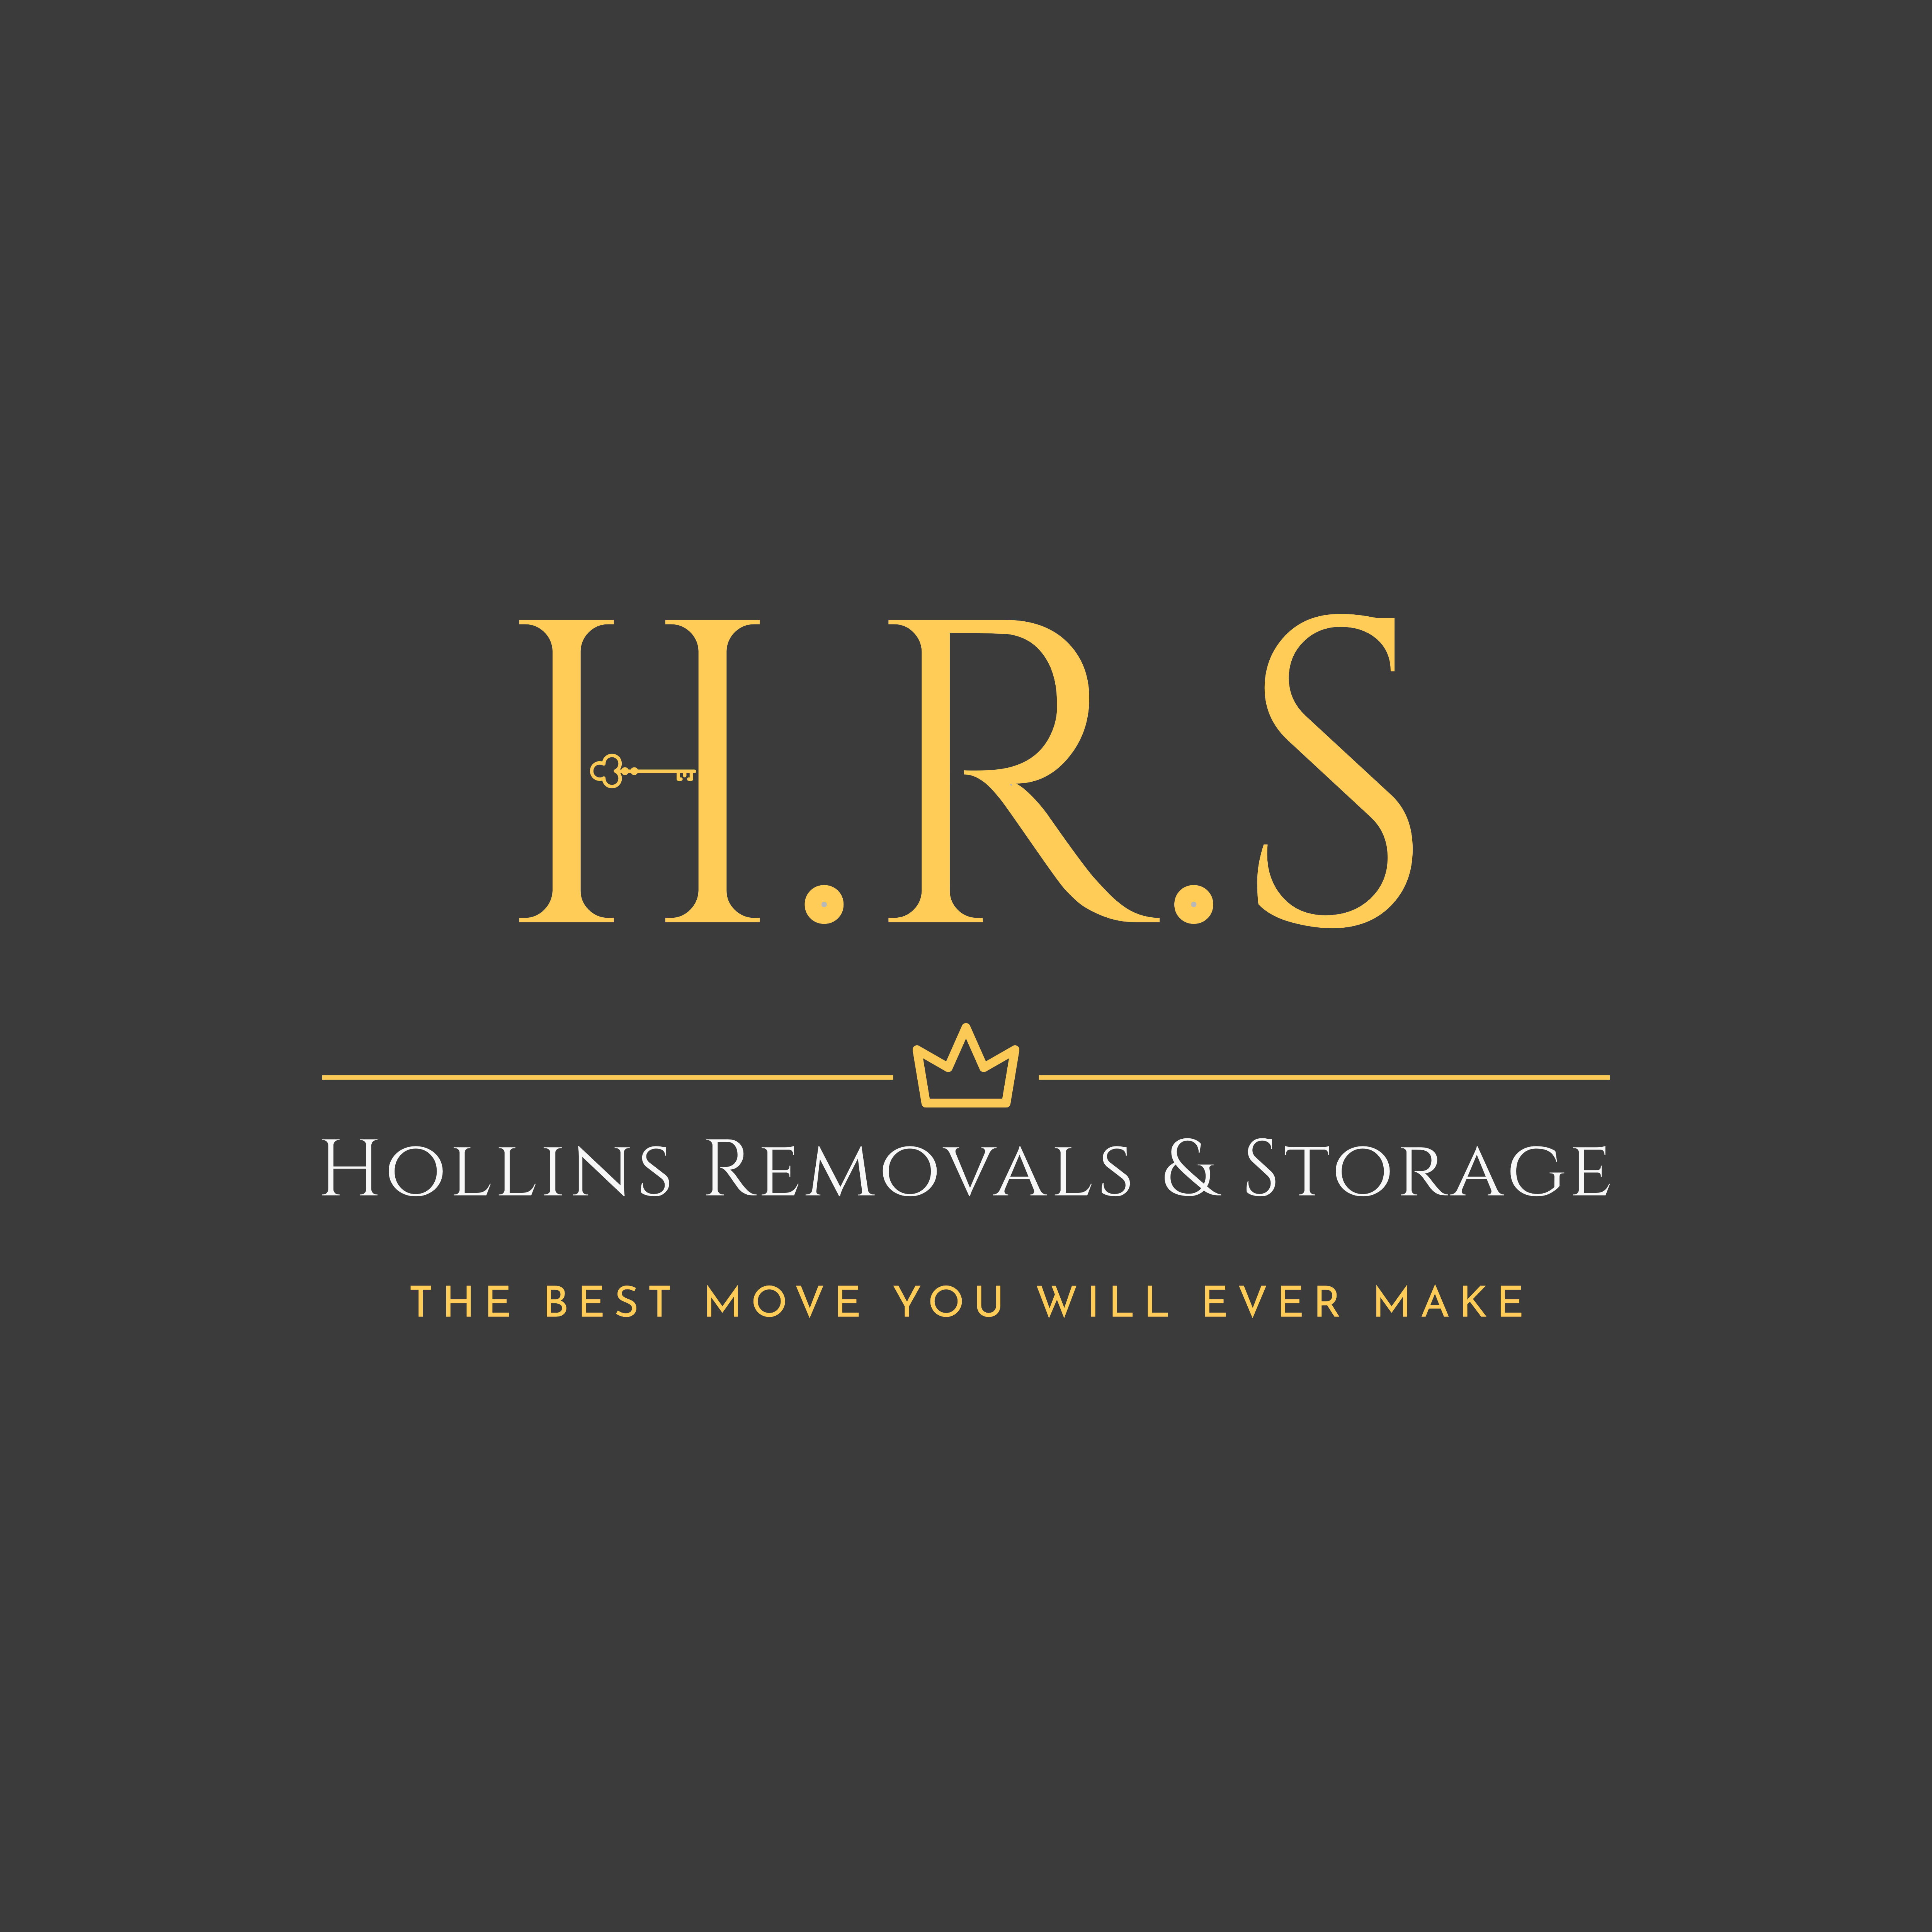 Hollins Removals & Storage